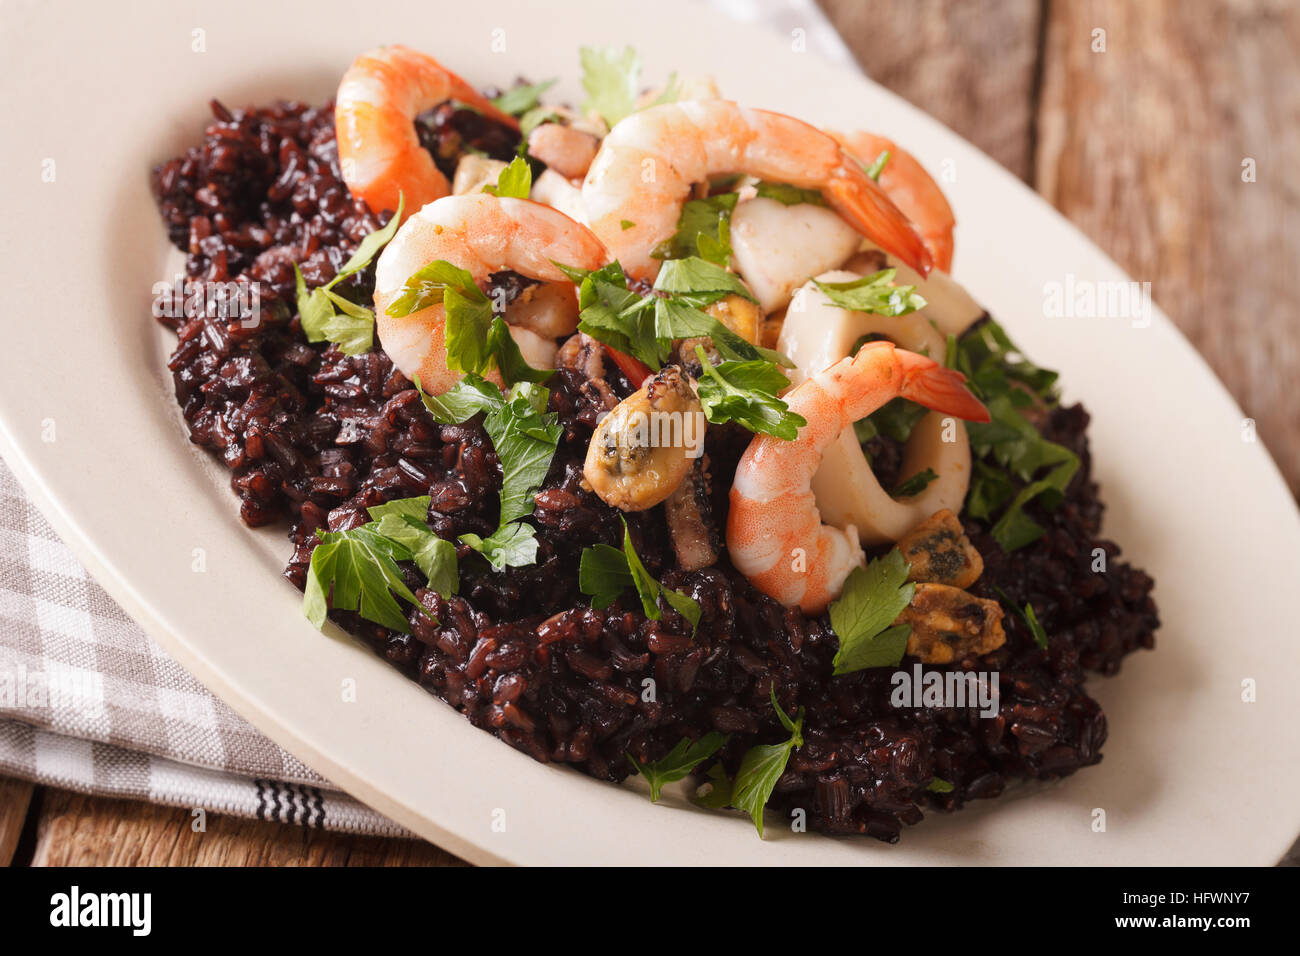 Wild il riso nero con gamberi, calamari, cozze e capesante close up su una piastra sul tavolo. Posizione orizzontale Foto Stock